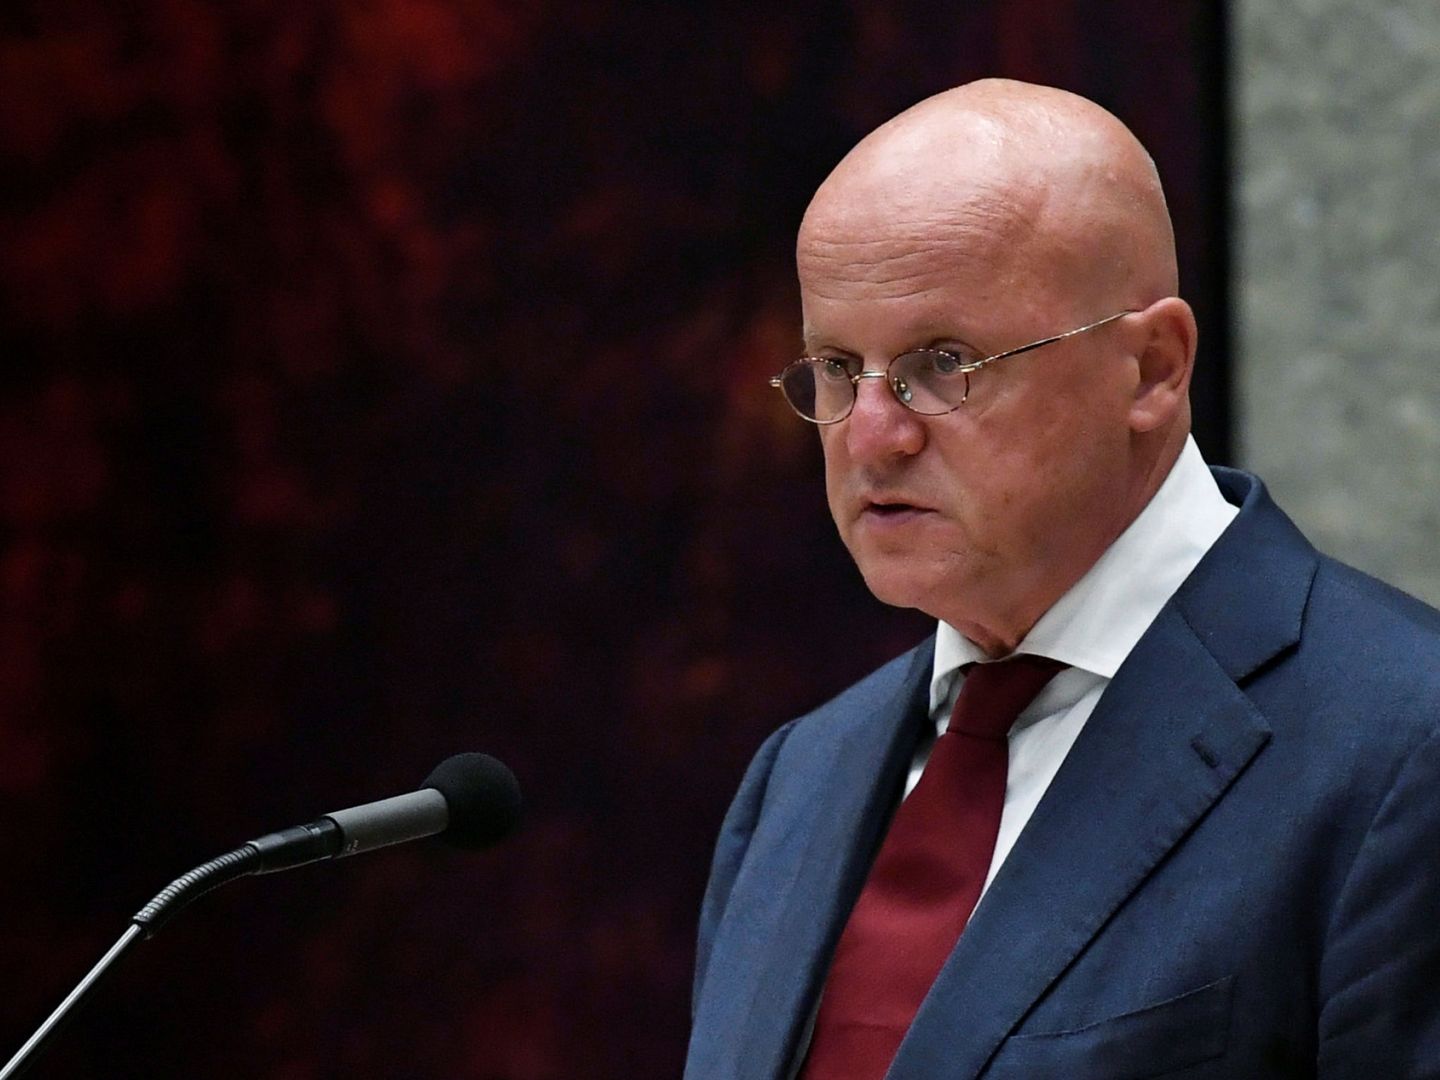 El ministro de Seguridad y Justicia, Ferd Grapperhaus. (Reuters)